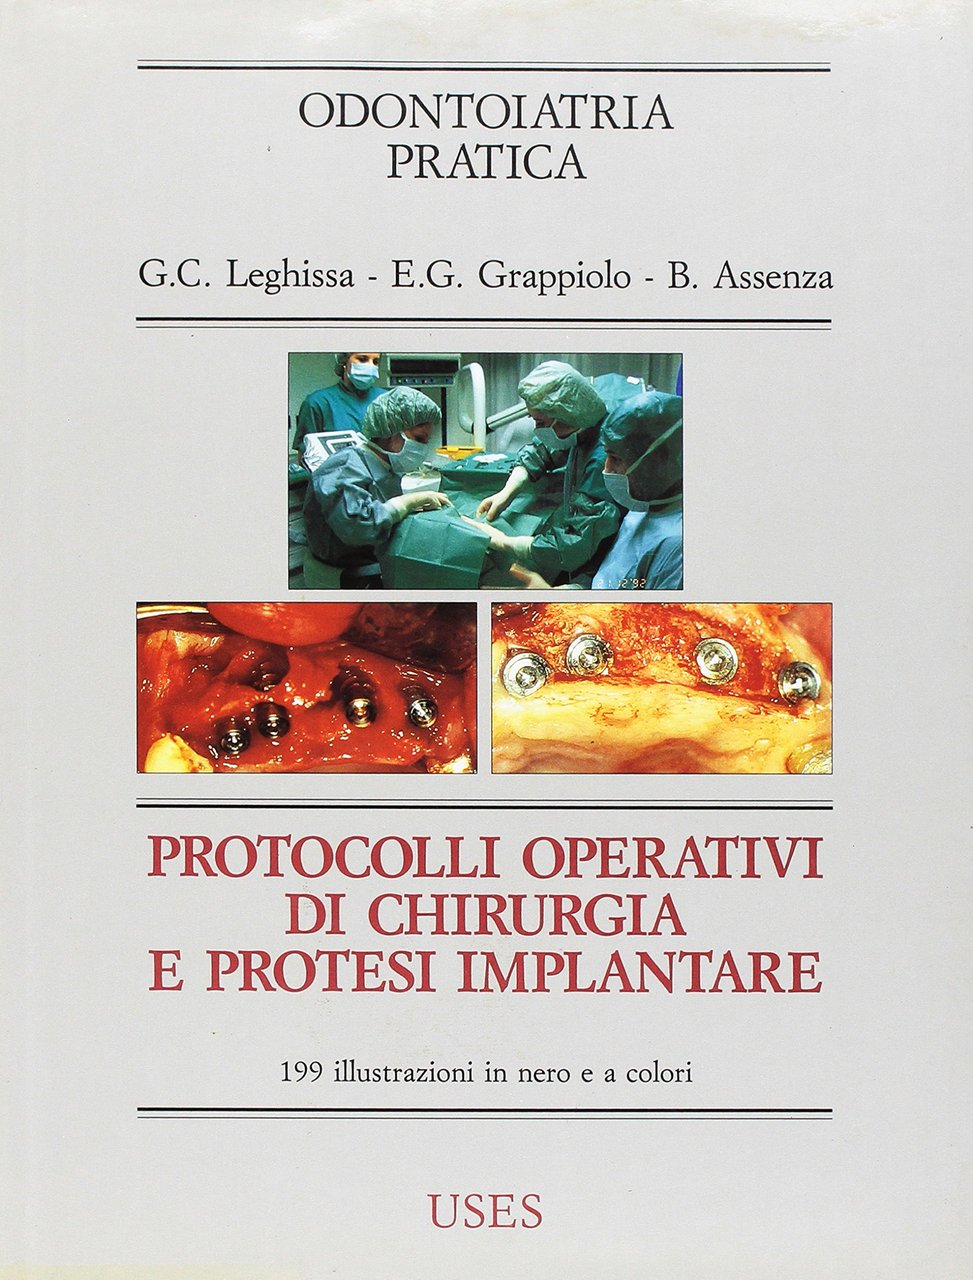 Protocolli operativi di chirurgia e protesi implantare, Torino, UTET, 1993